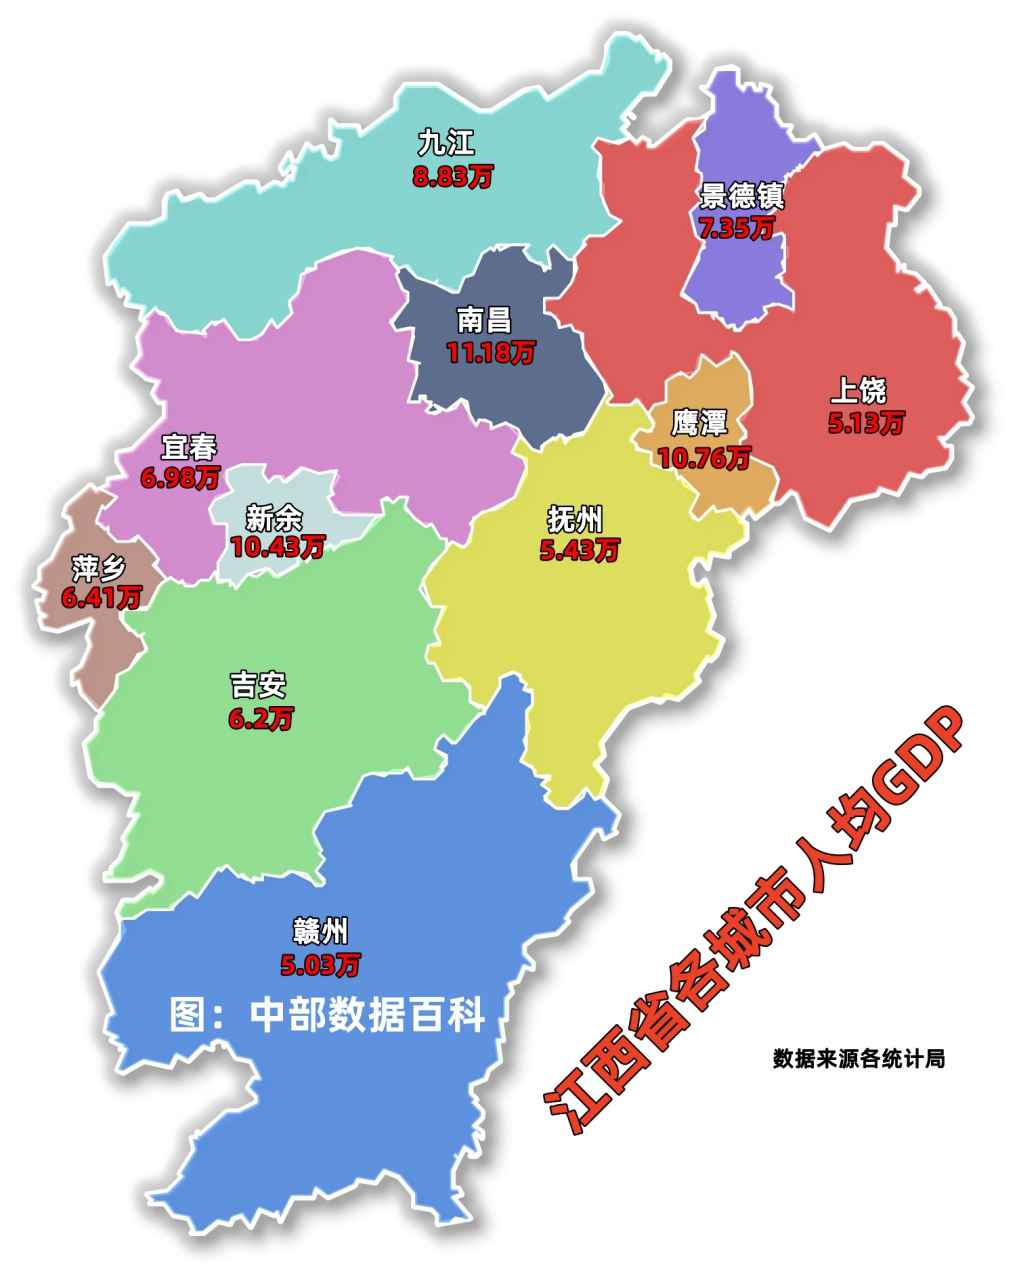 2022年江西省各城市人均gdp数据,省会南昌以11